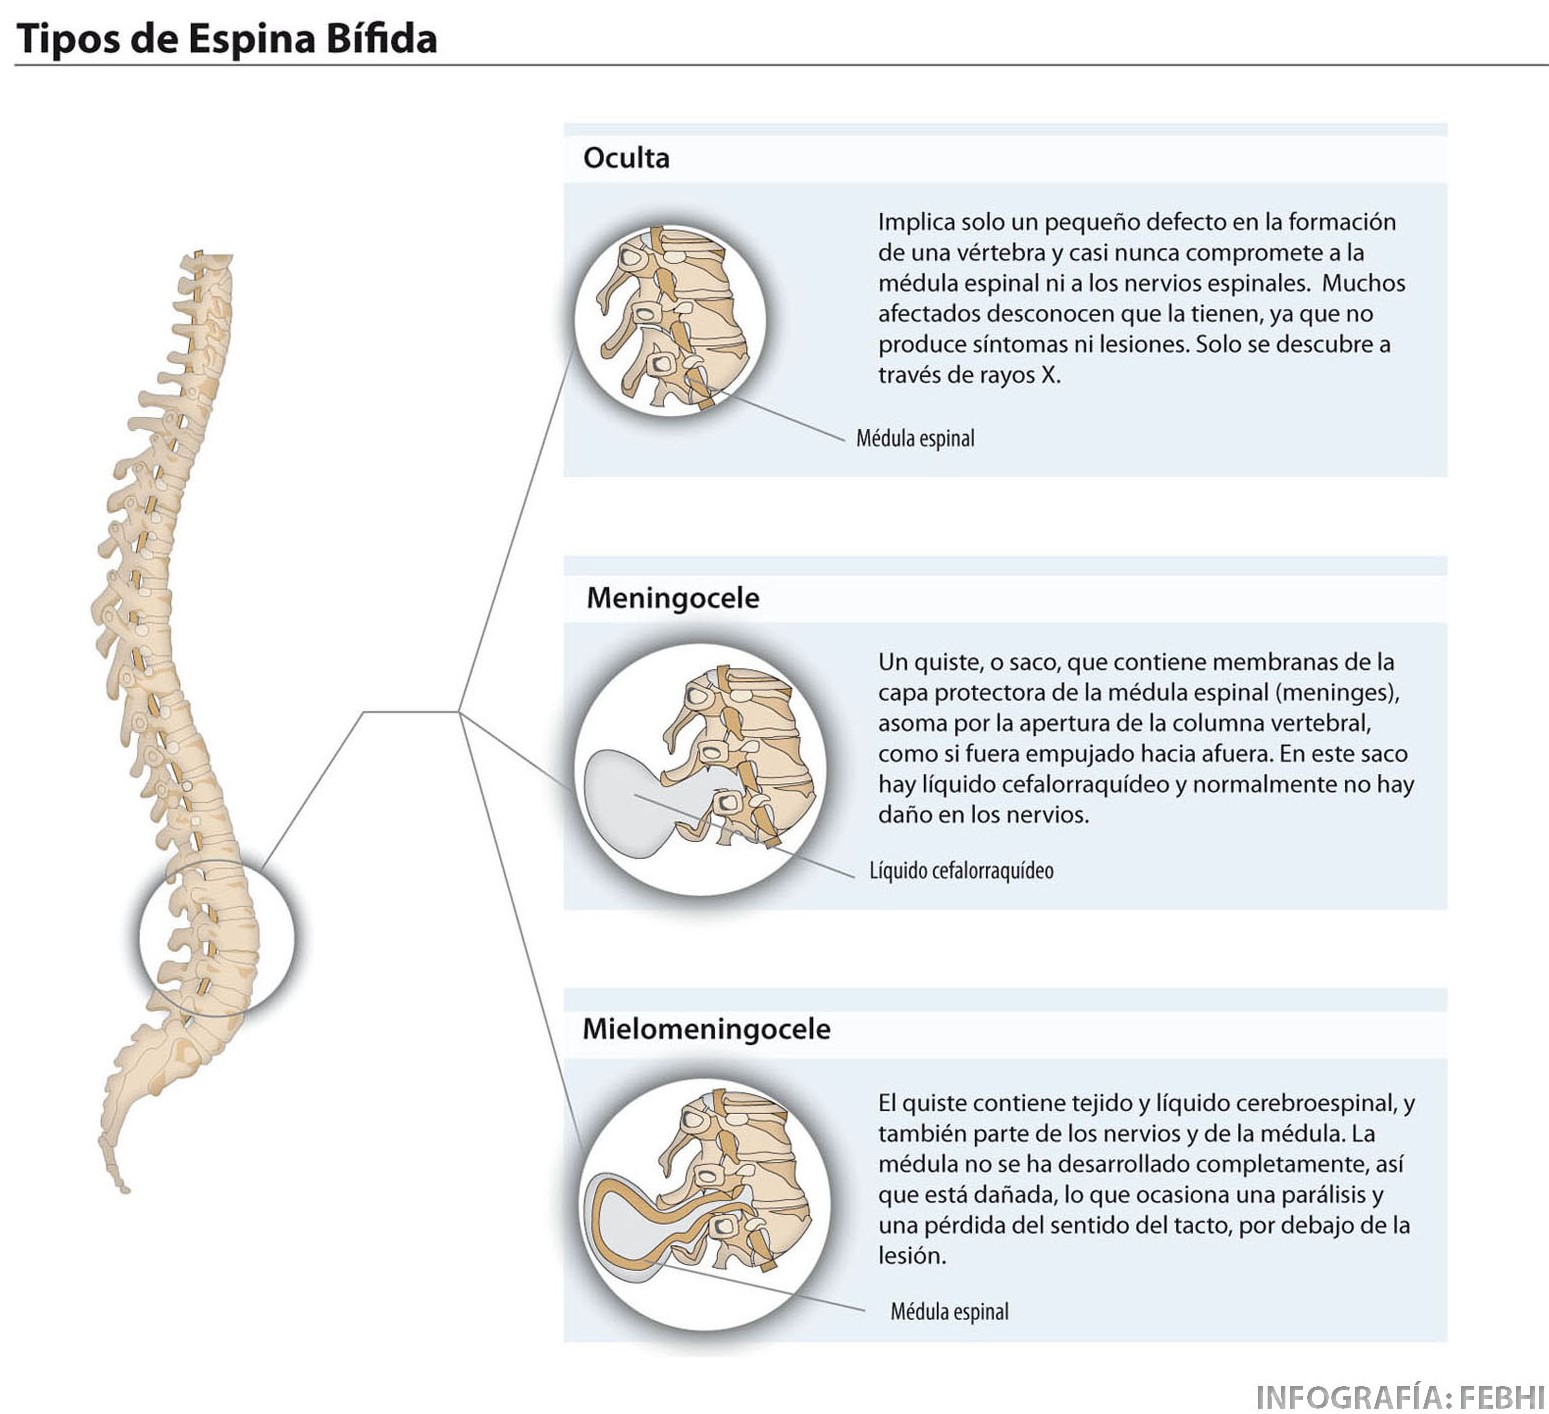 imagen representando los tipos de espina bífida